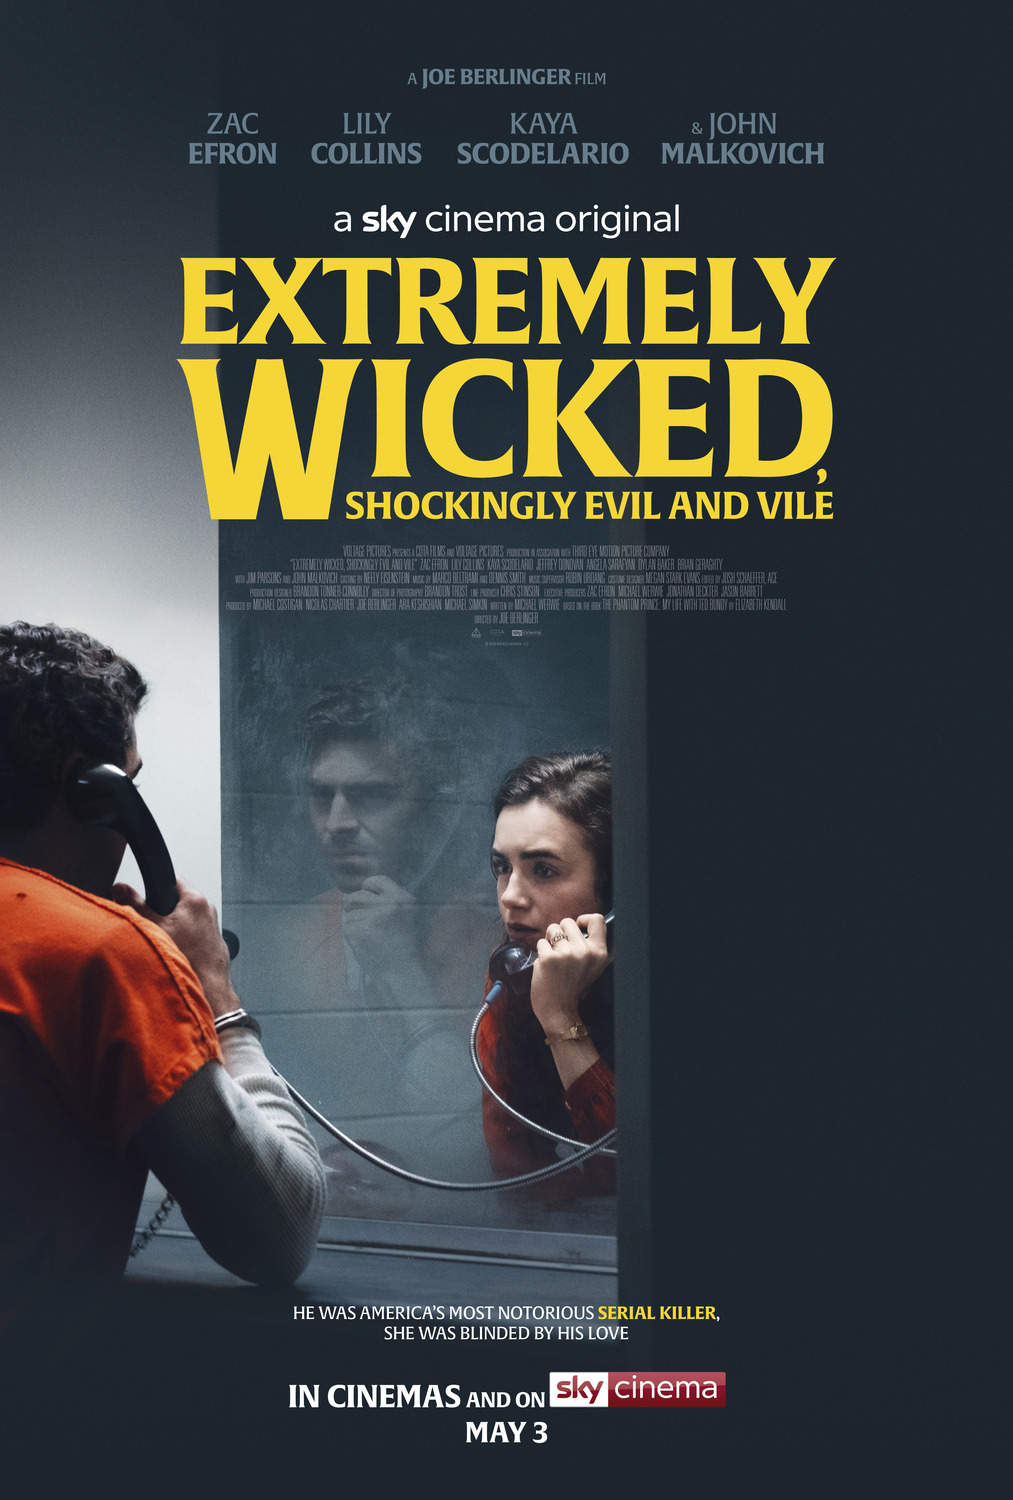 Résultat de recherche d'images pour "Extremely Wicked : shockingly evil and vile affiche"